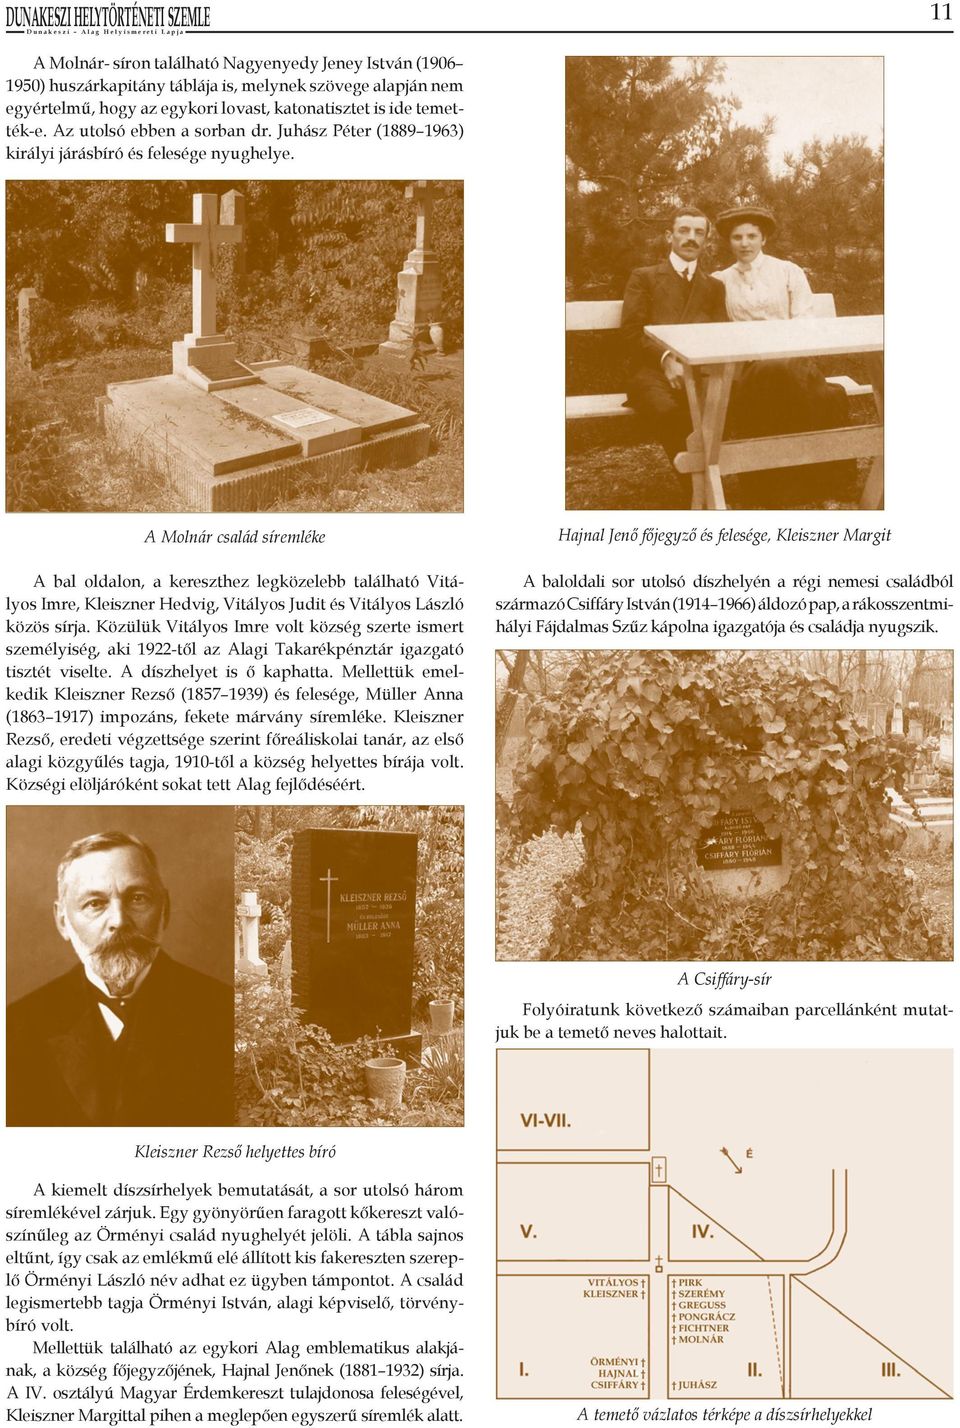 A Molnár család síremléke A bal oldalon, a kereszthez legközelebb található Vitályos Imre, Kleiszner Hedvig, Vitályos Judit és Vitályos László közös sírja.